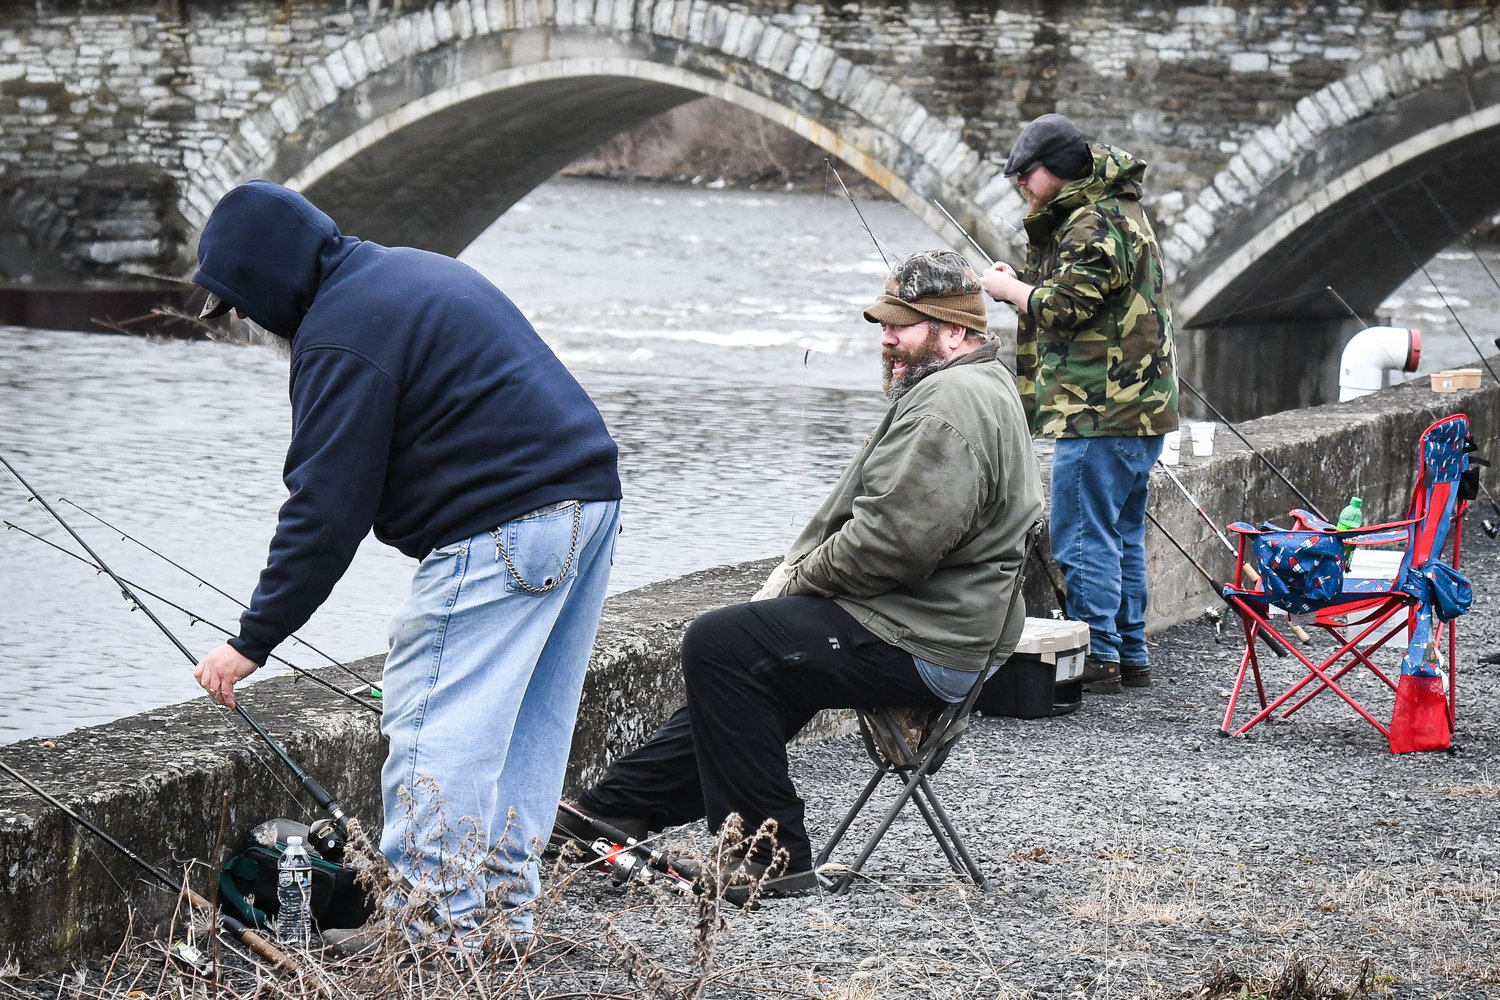 Los pescadores van a pescar cerca del puente Newport Stone Arch el día de apertura de la temporada de truchas el viernes por la mañana.